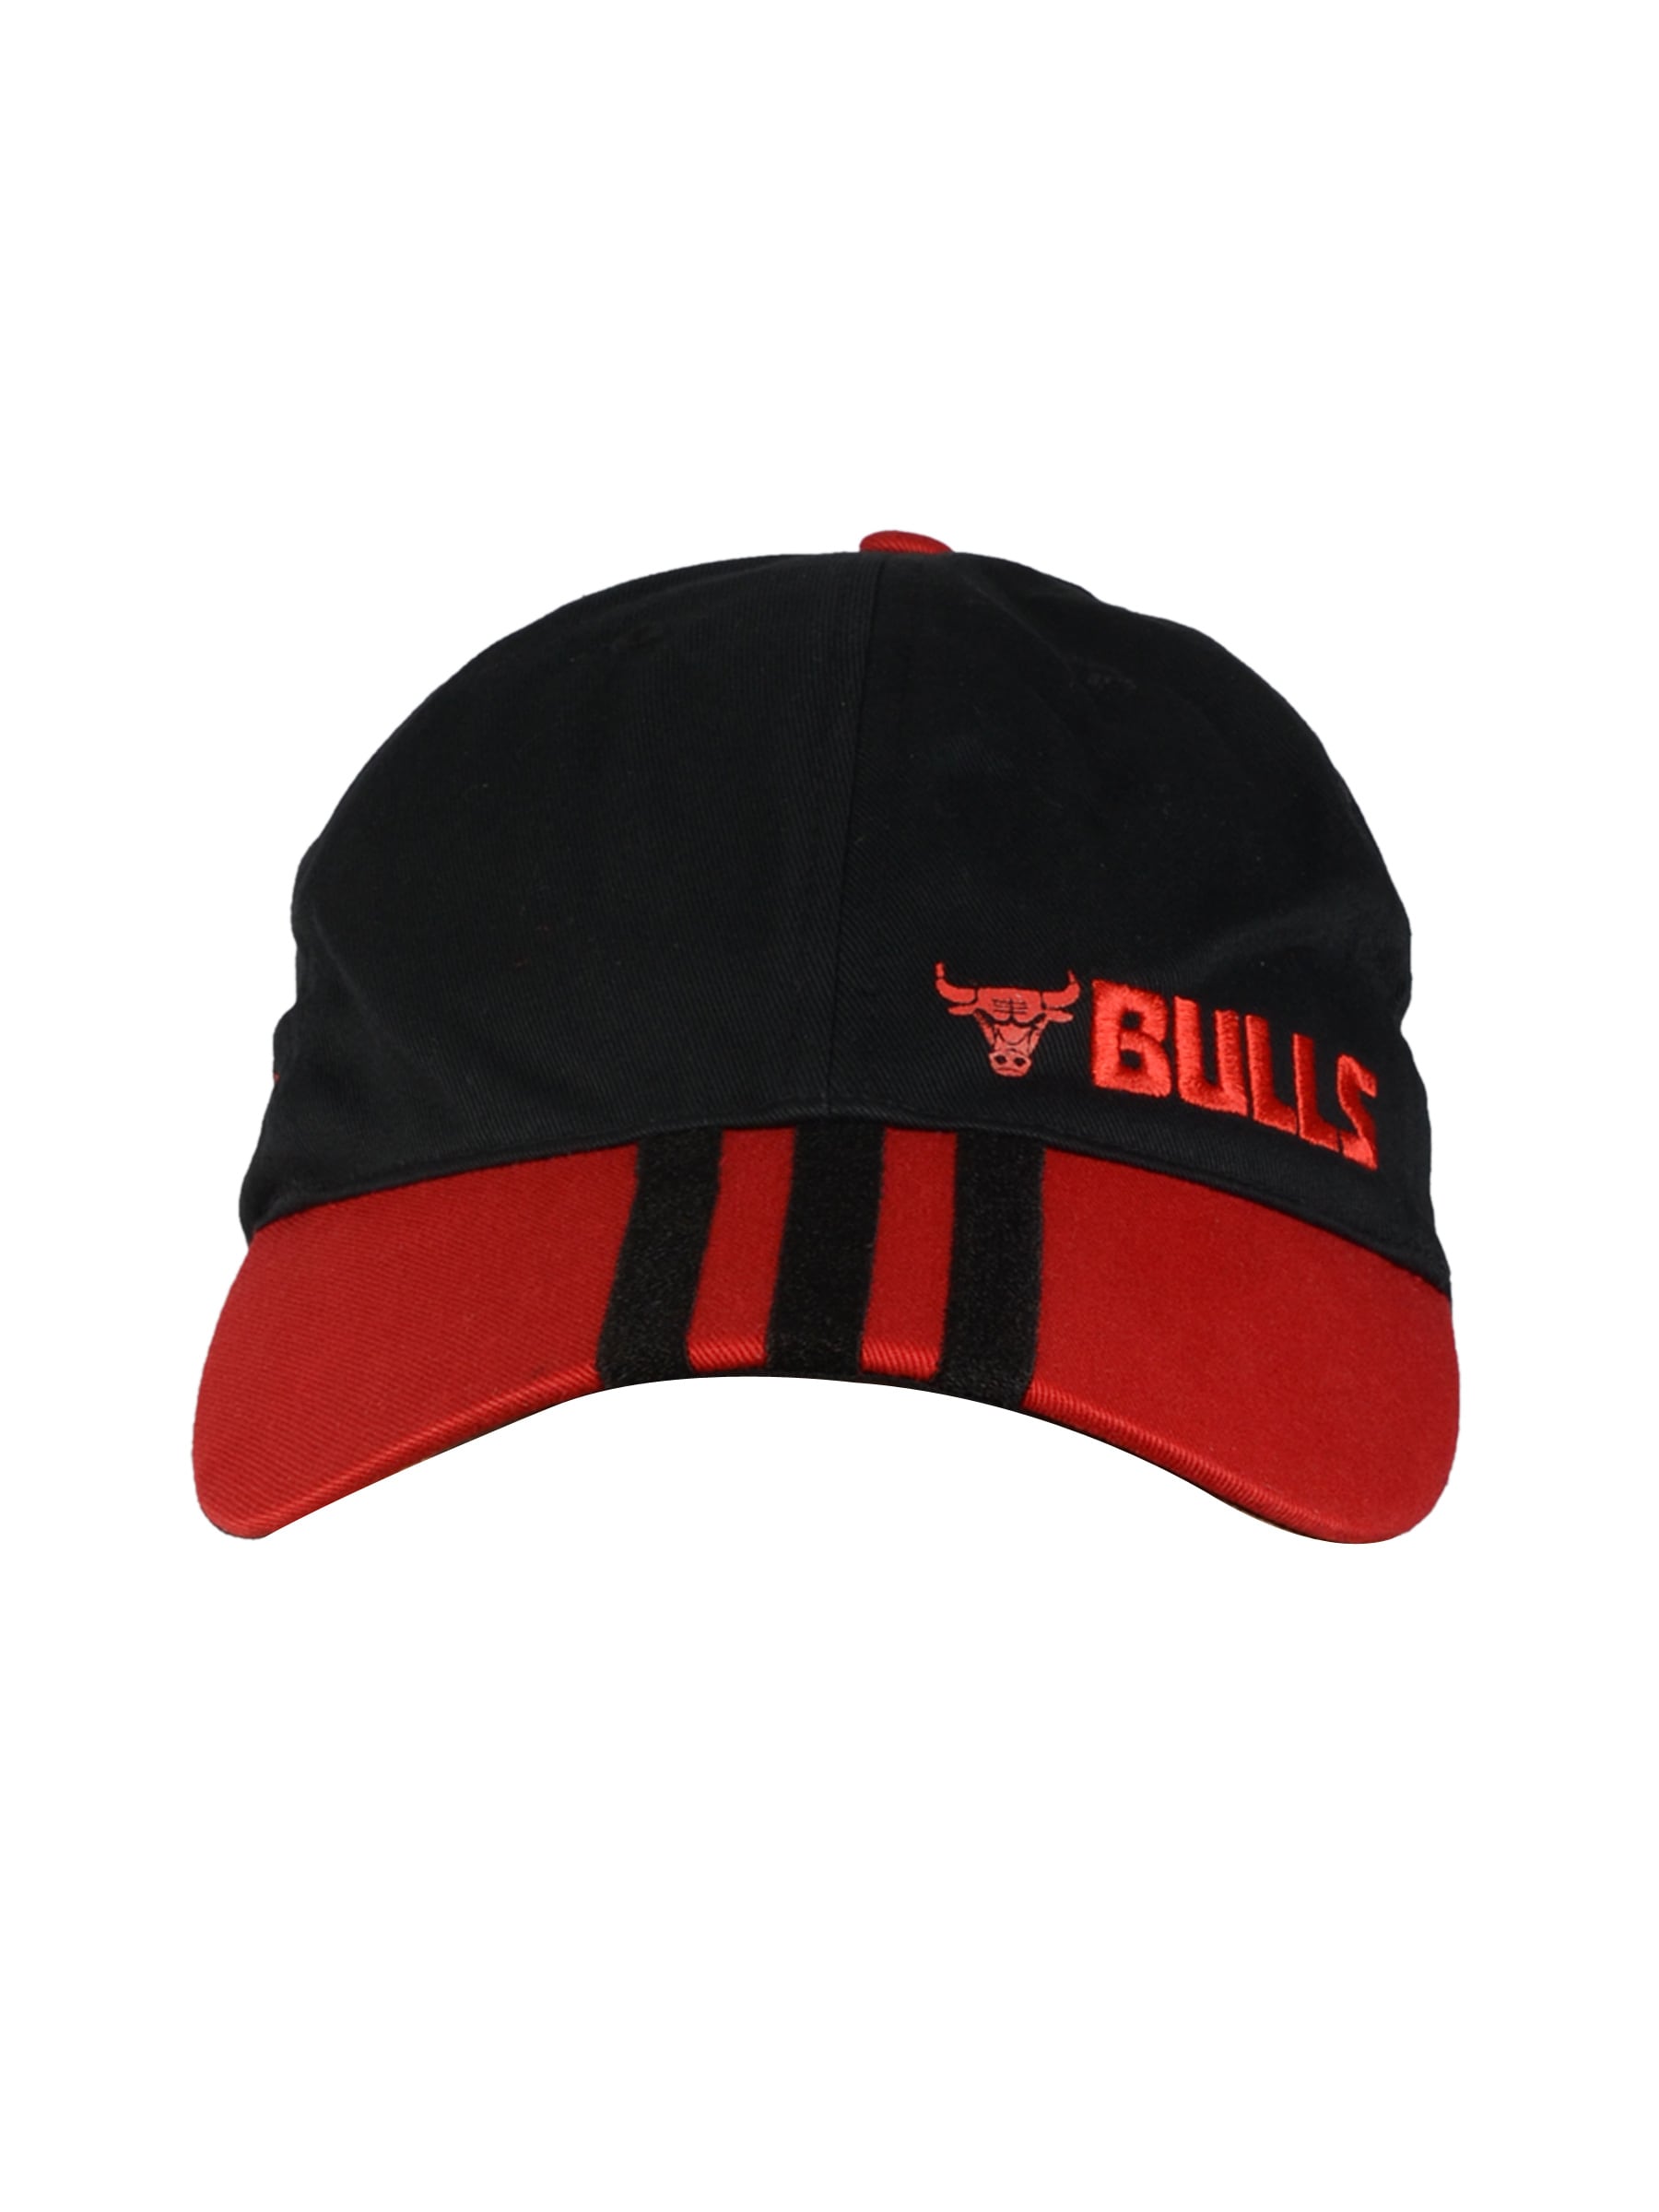 ADIDAS Unisex Bulls Black Red Cap